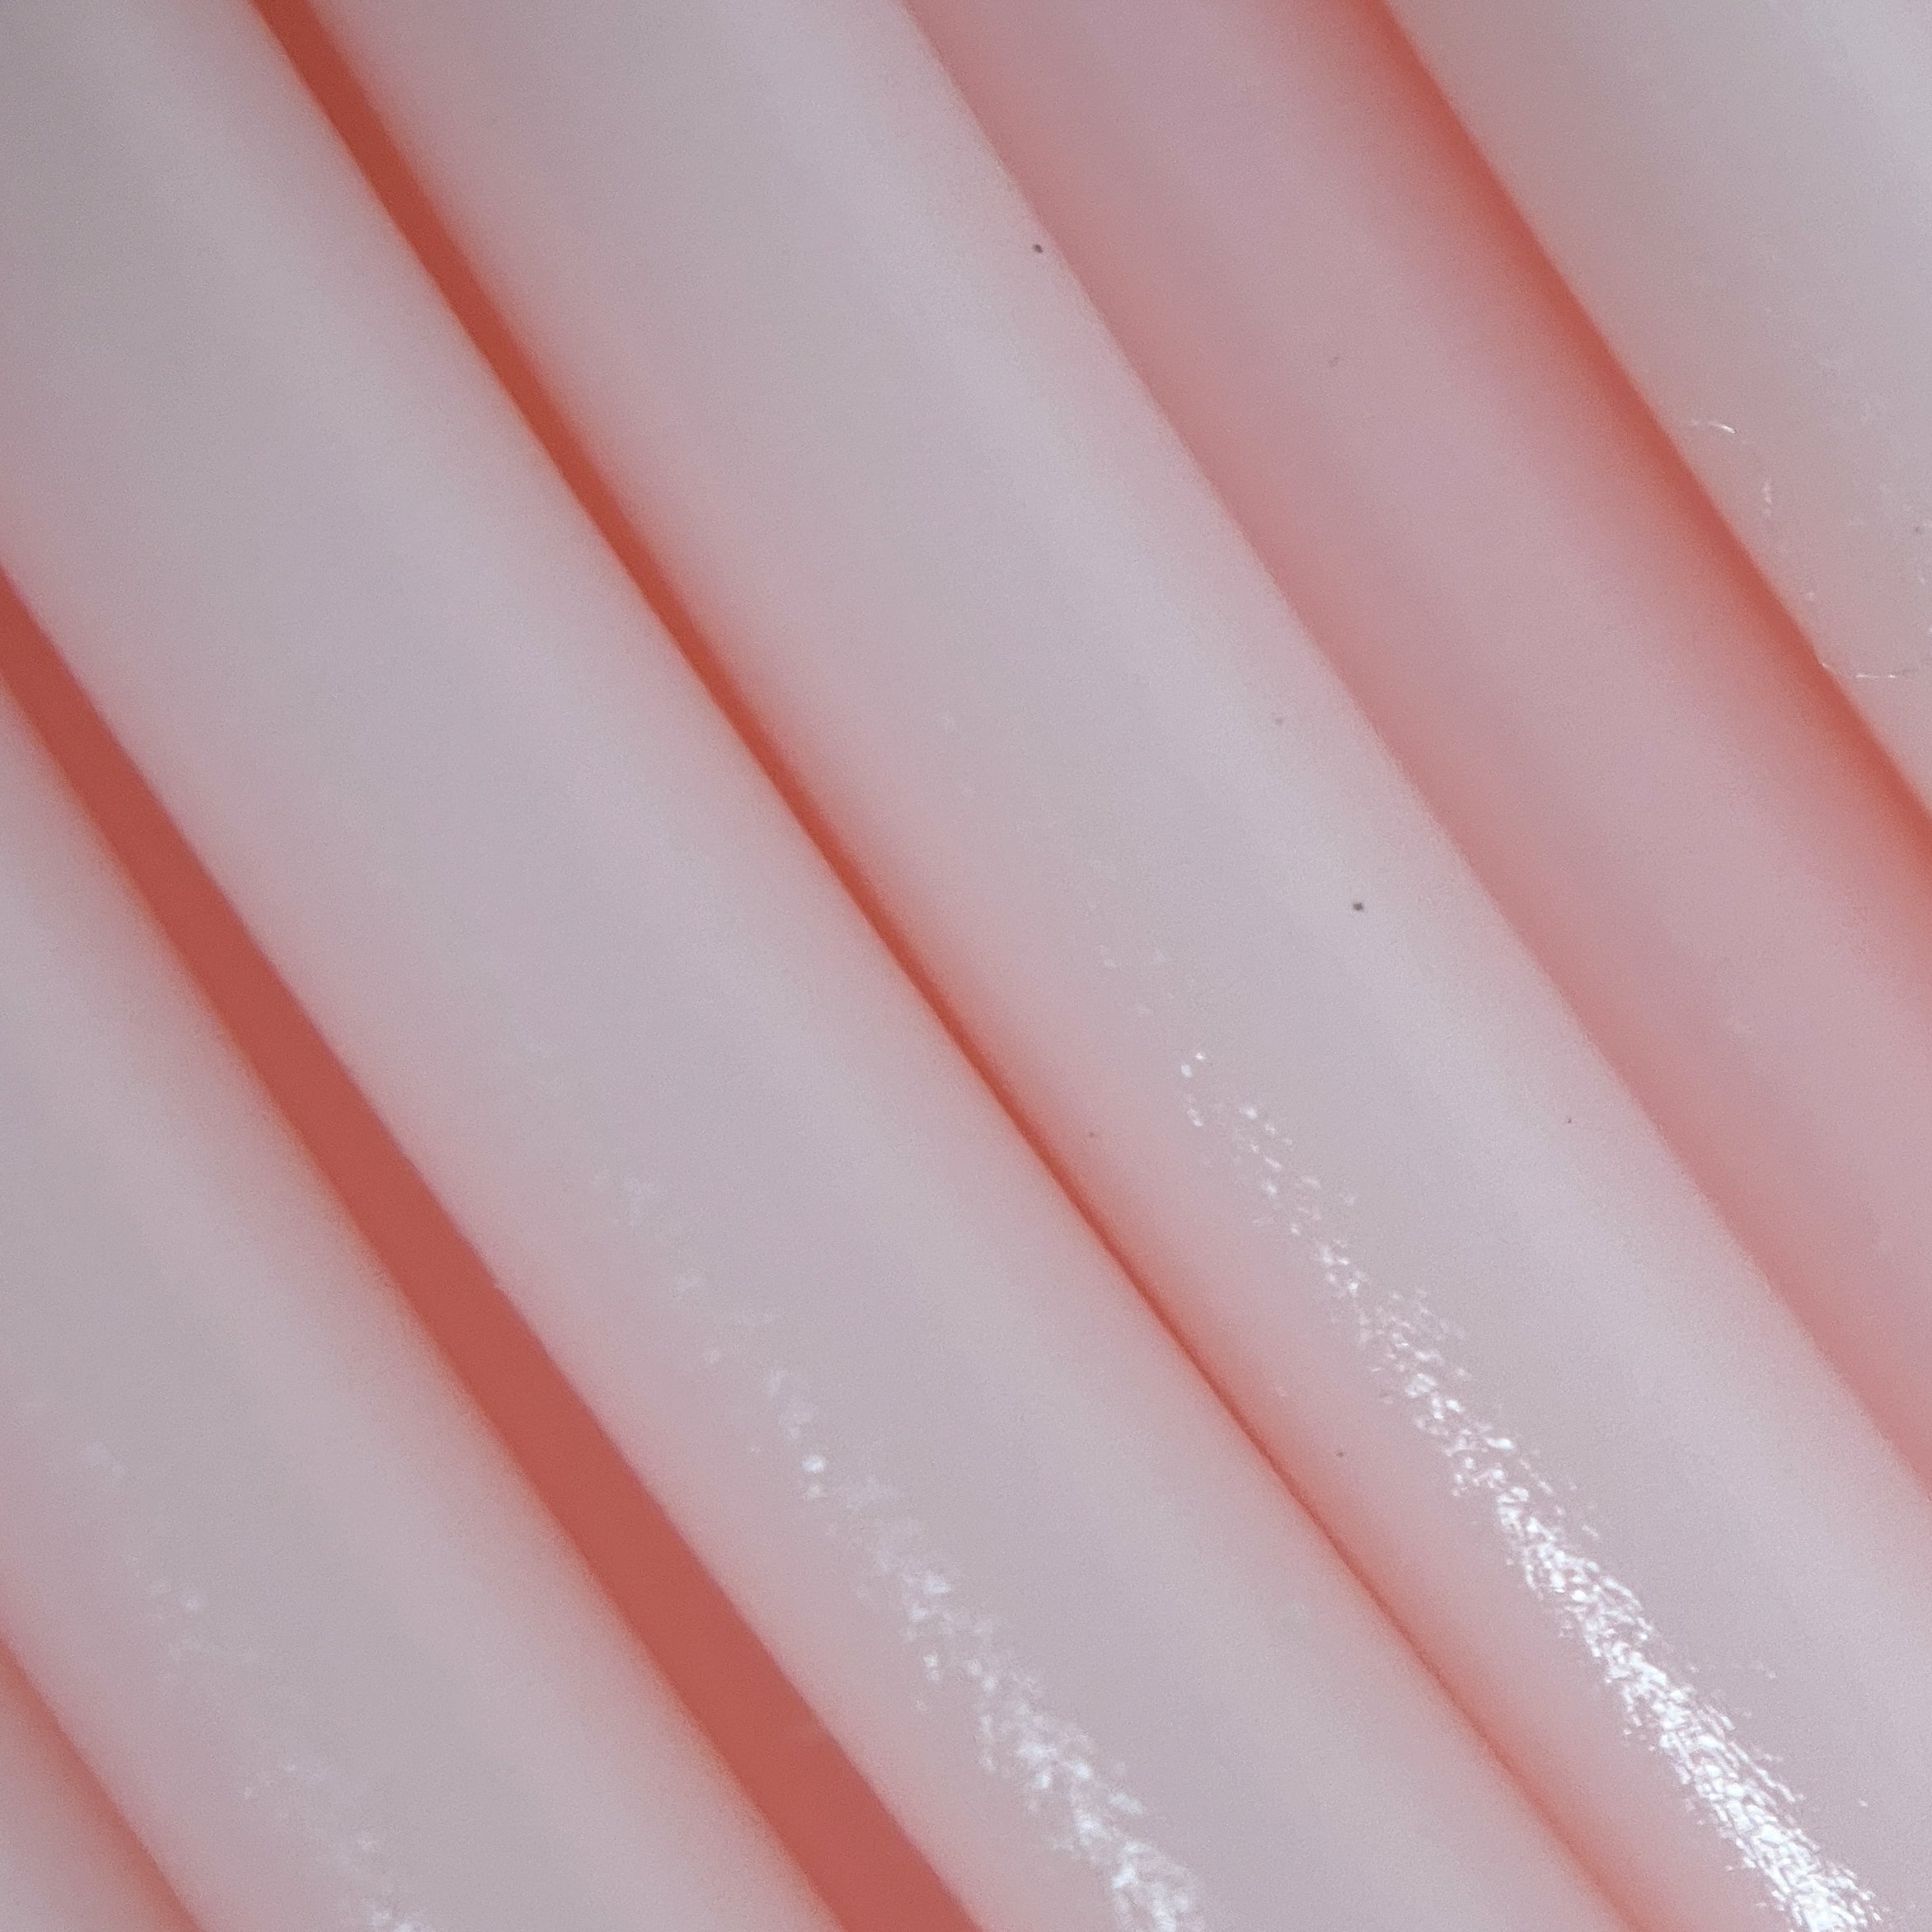 Pale Pink PLA Filament 1.75mm, 1kg